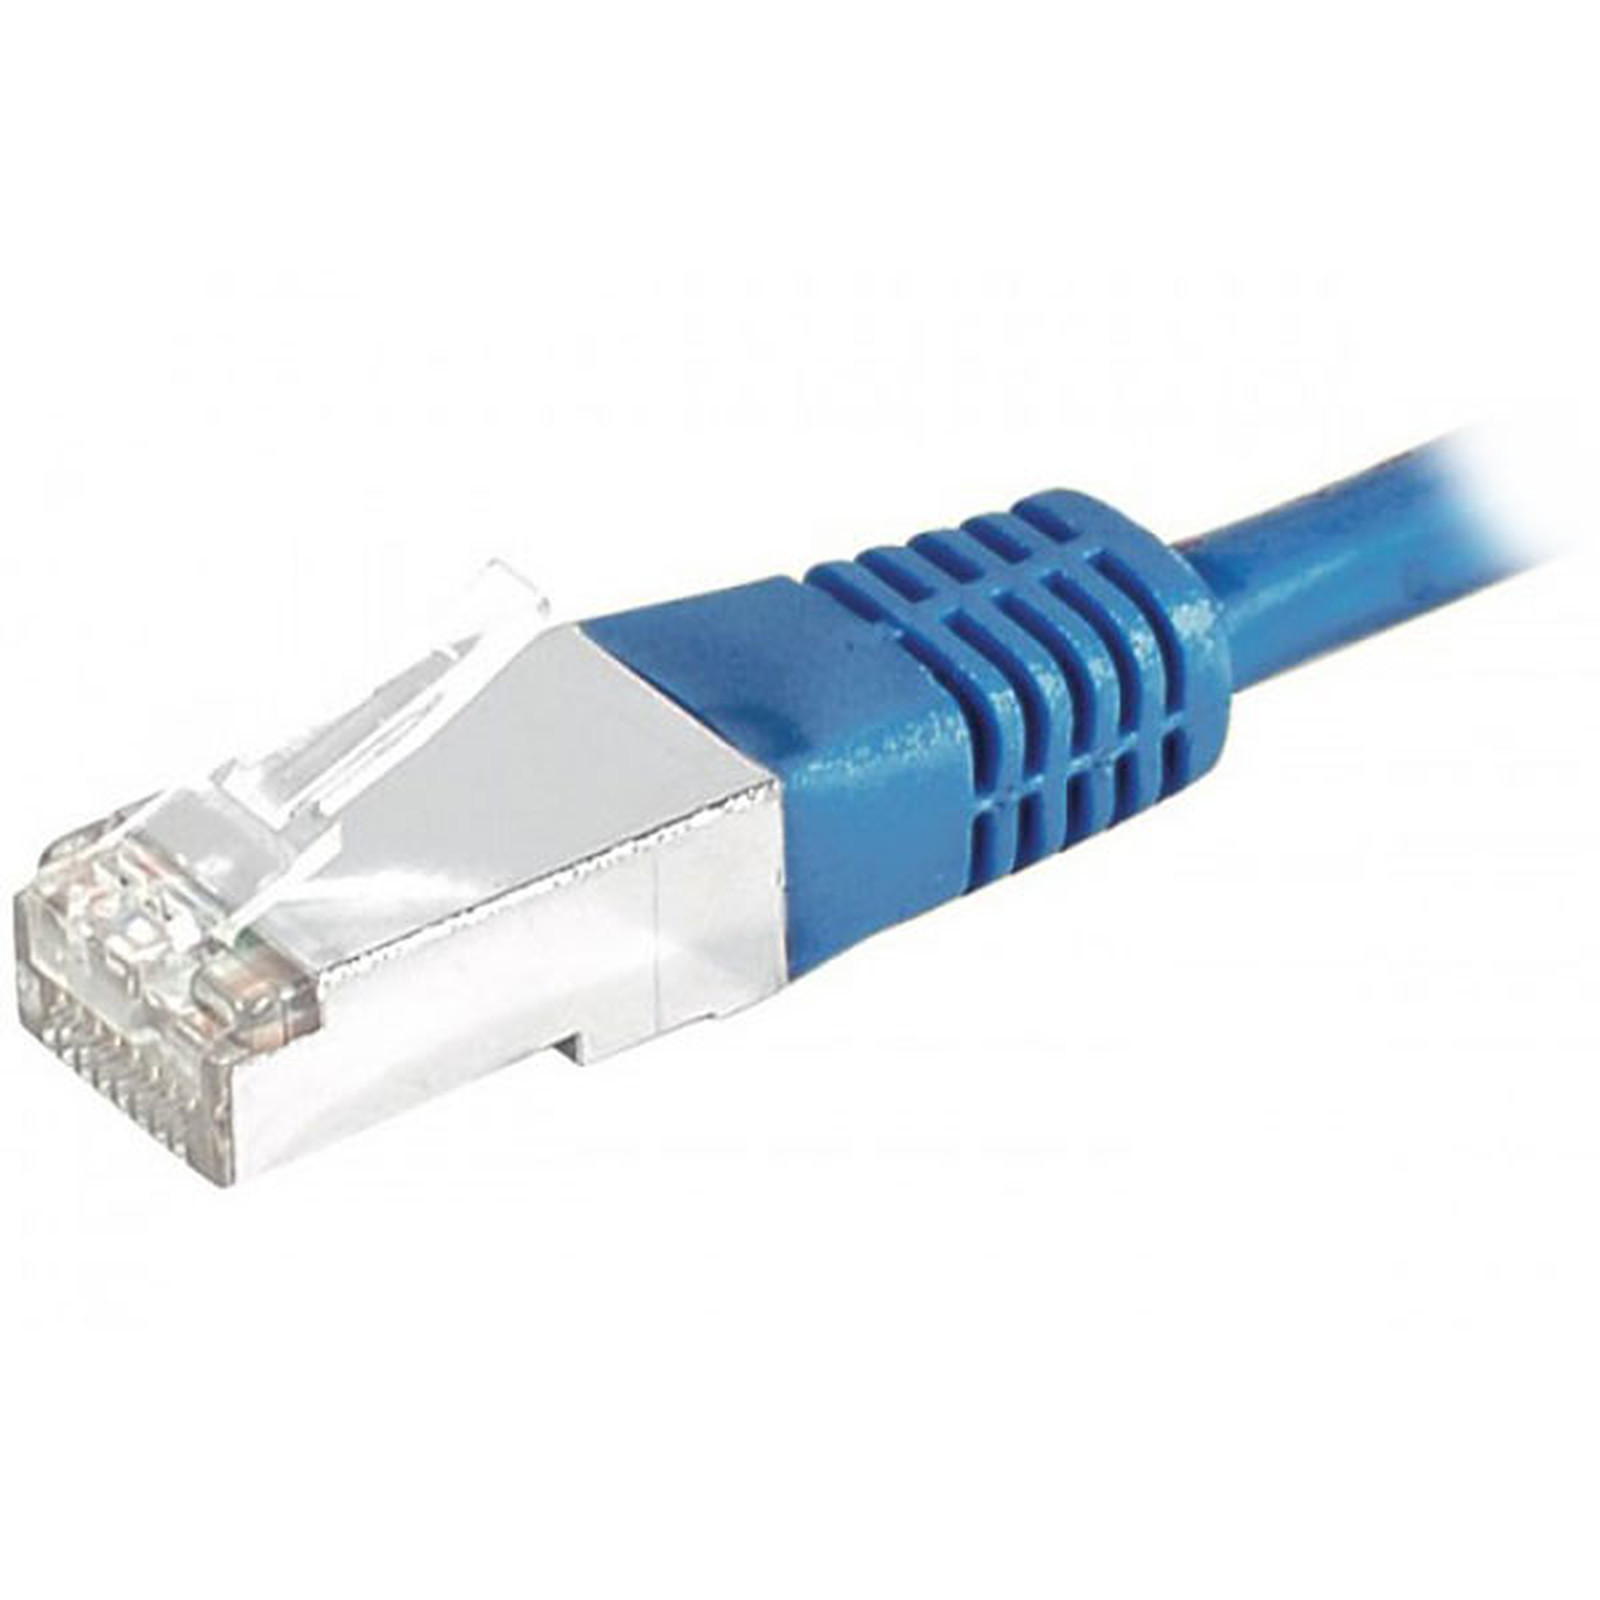 Cable RJ45 categorie 6 S/FTP 0.5 m (Bleu) - Cable RJ45 Generique